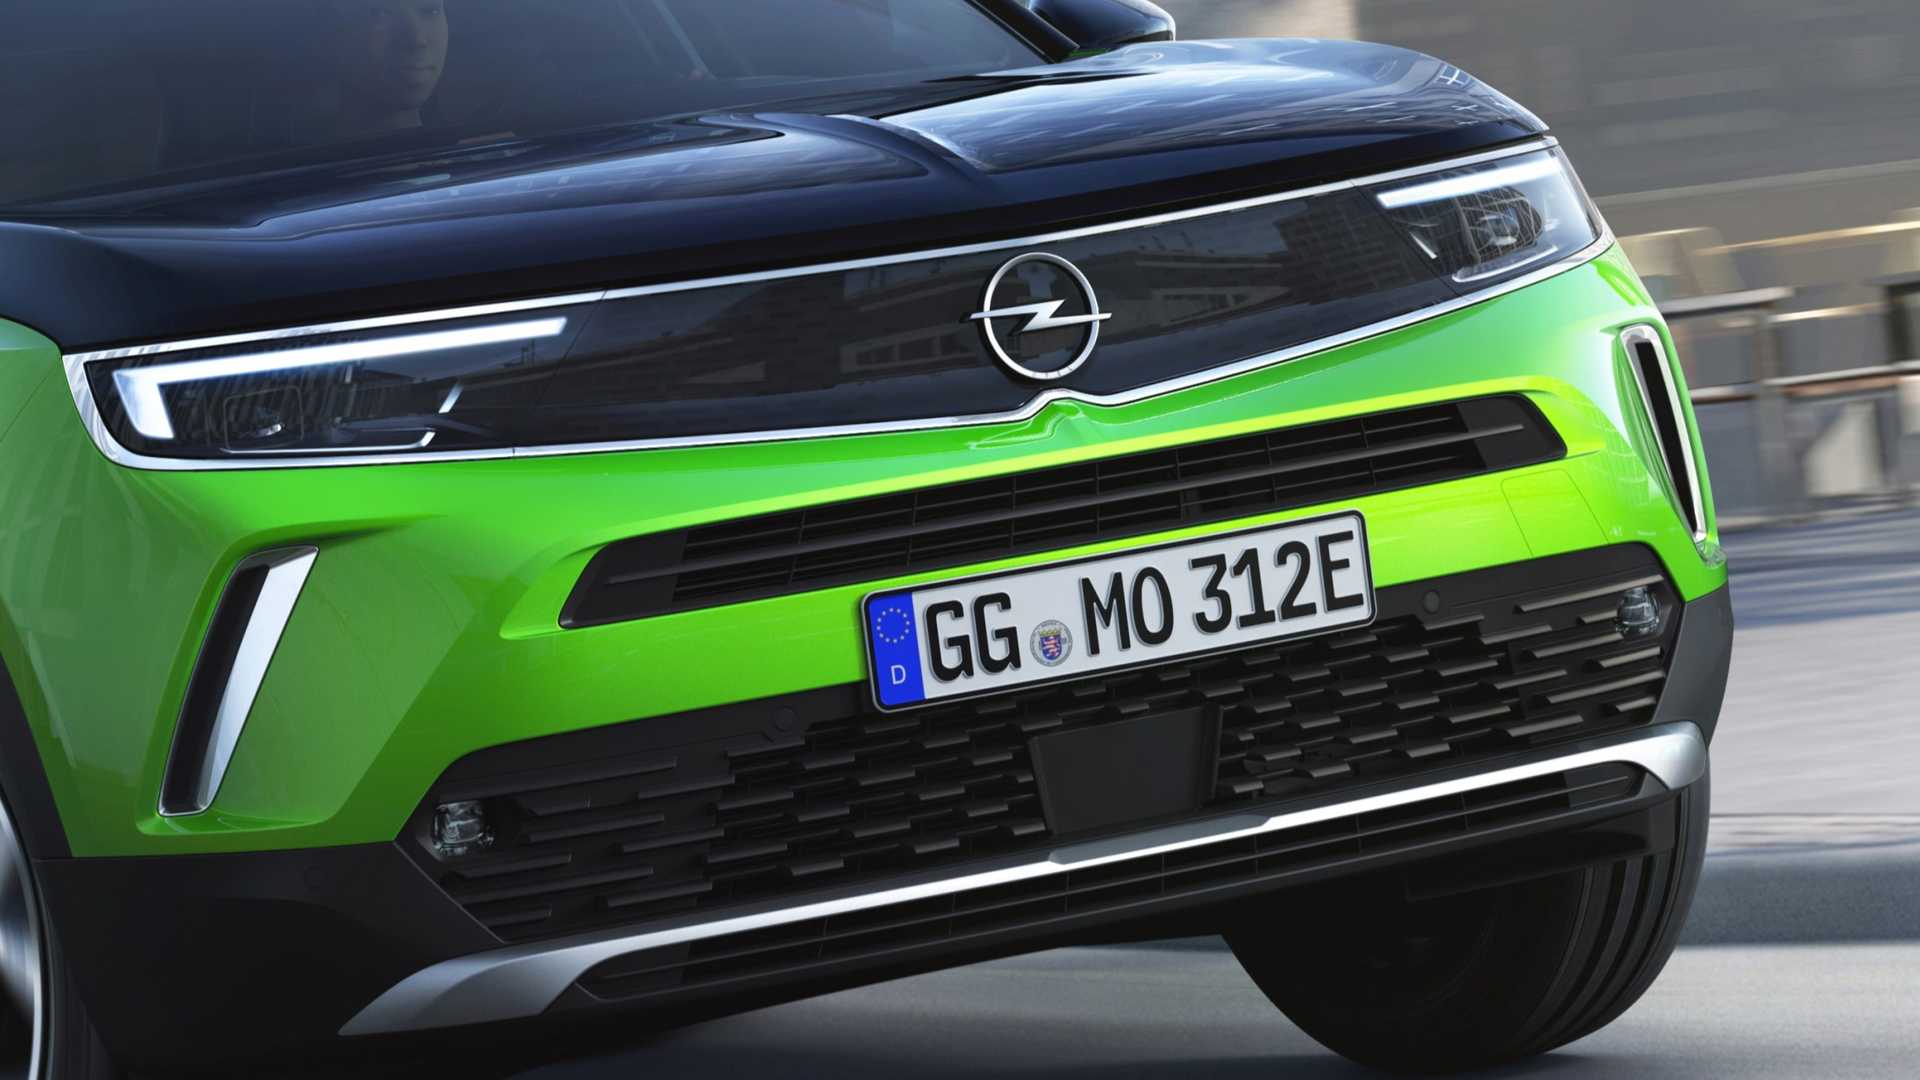 Tamamen elektrikli 2020 Opel Mokka tanıtıldı